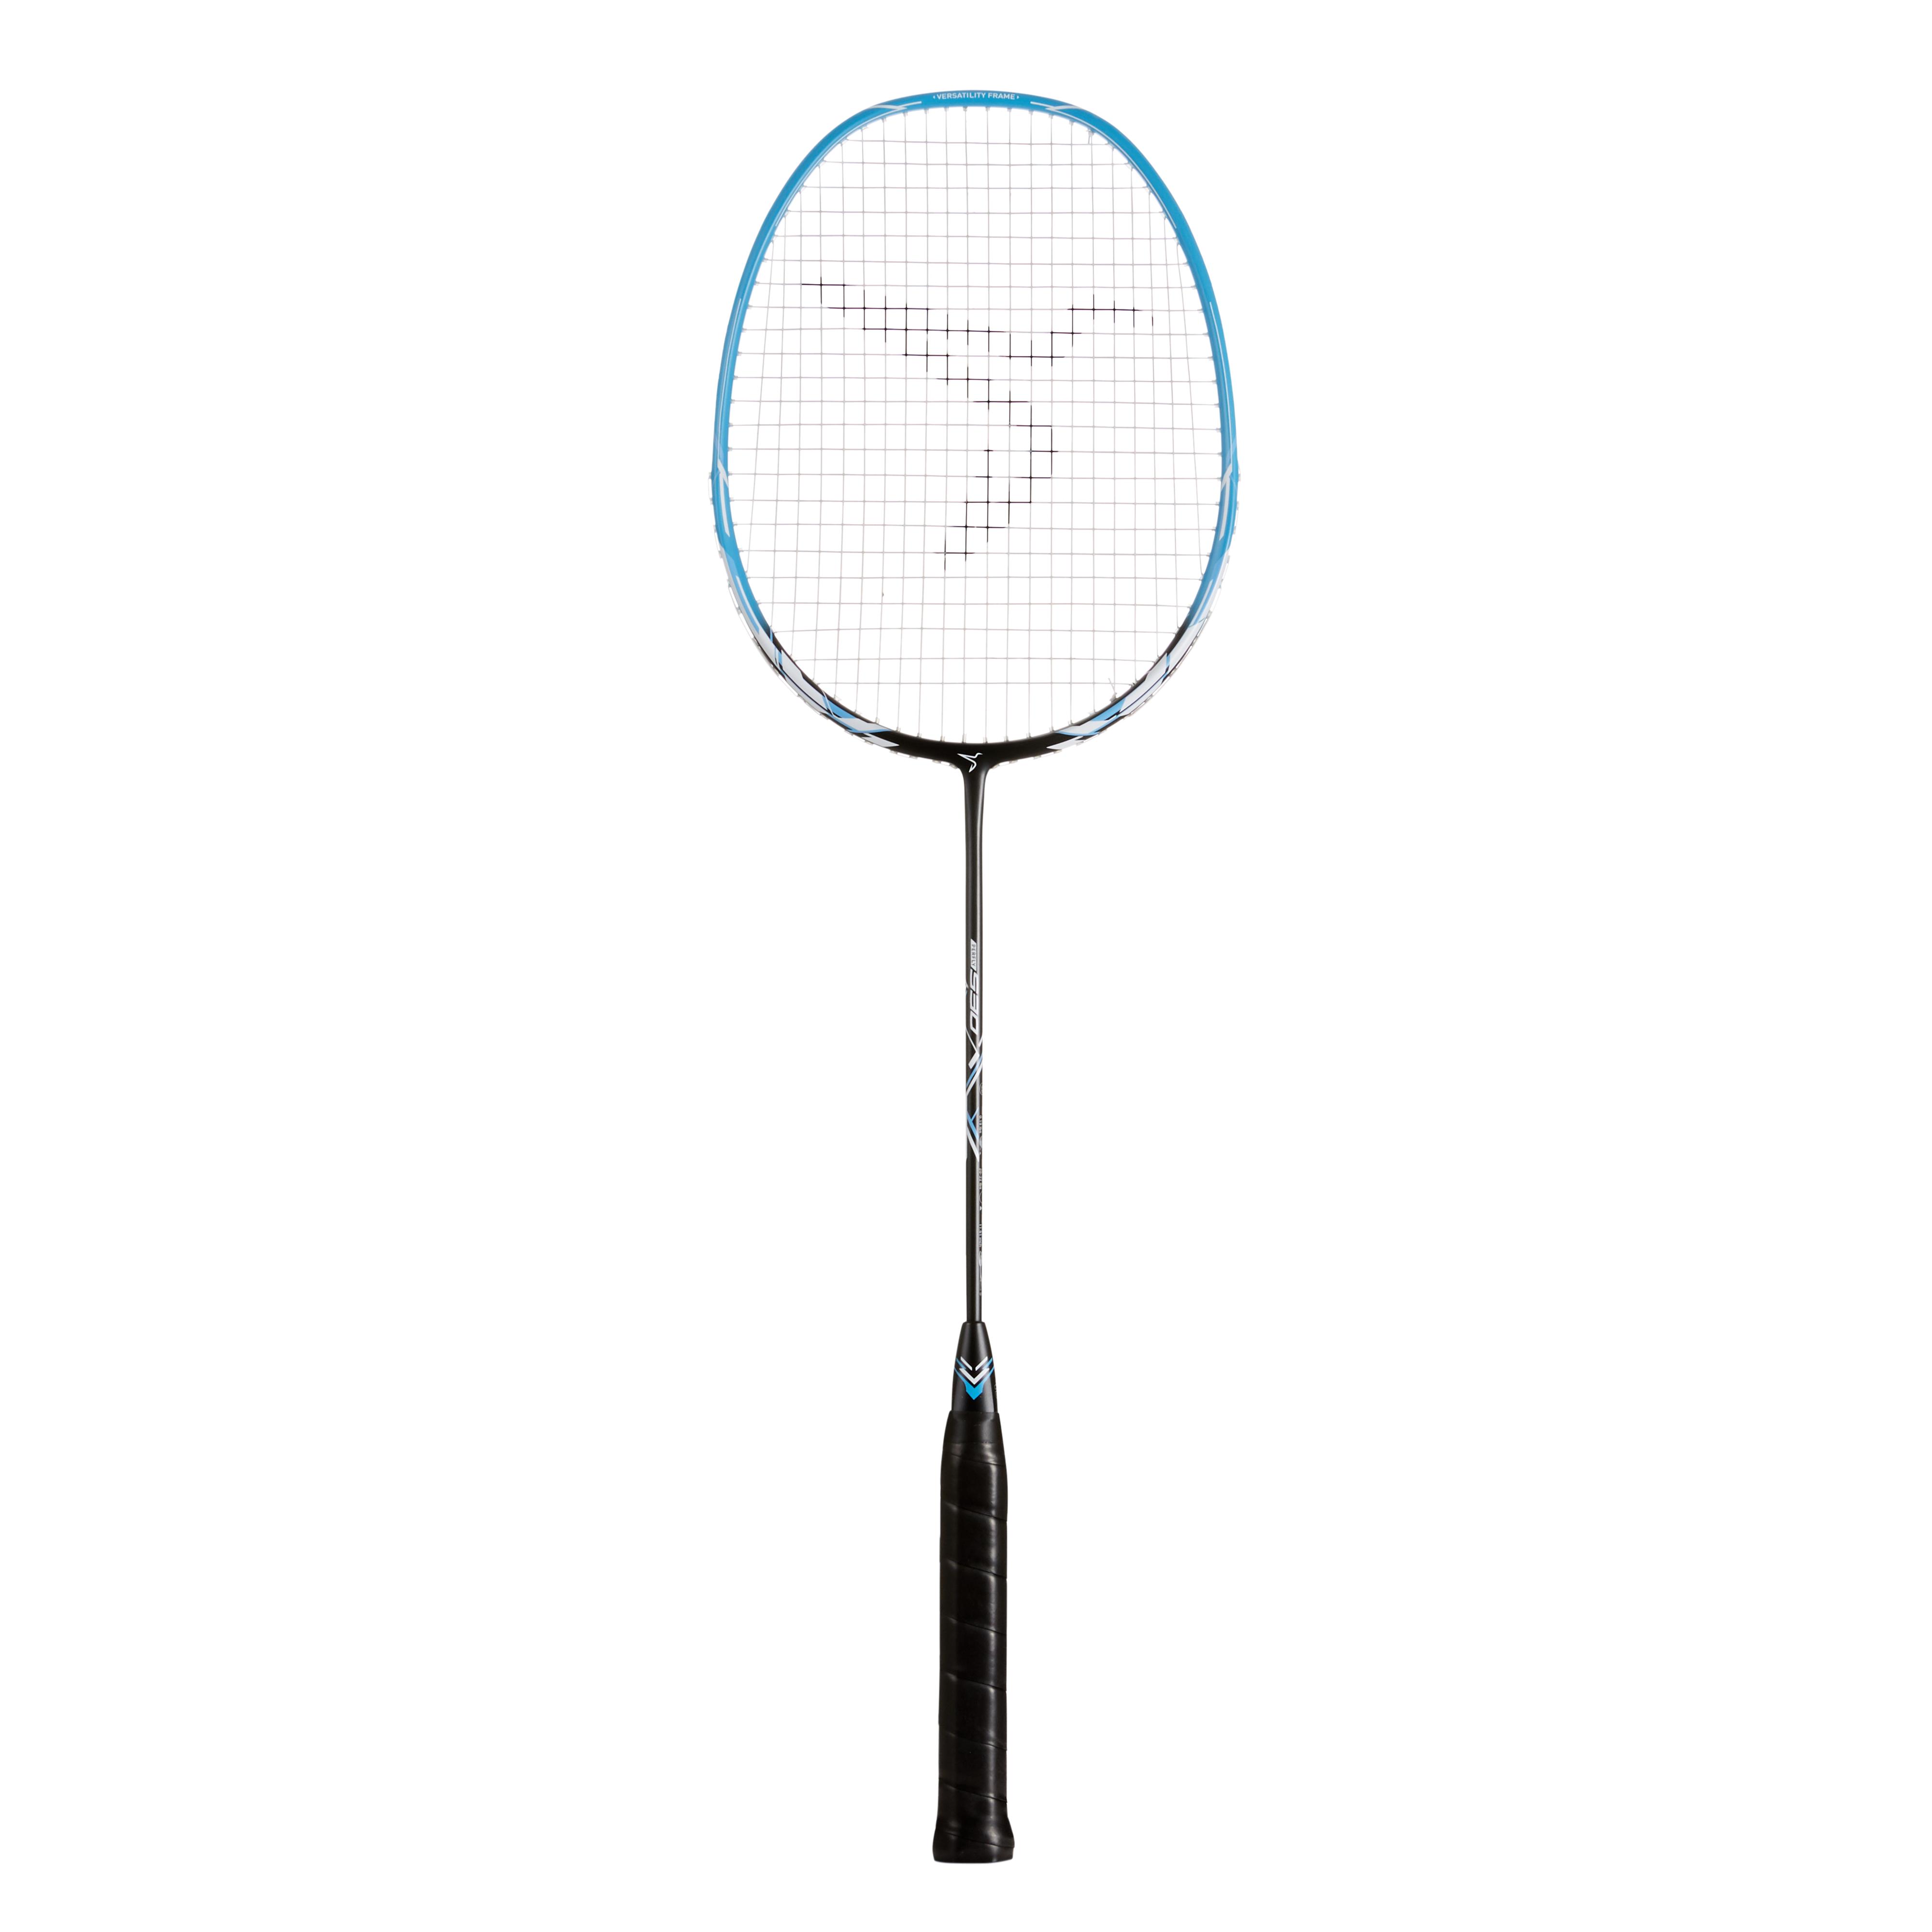 Rachetă badminton BR 530